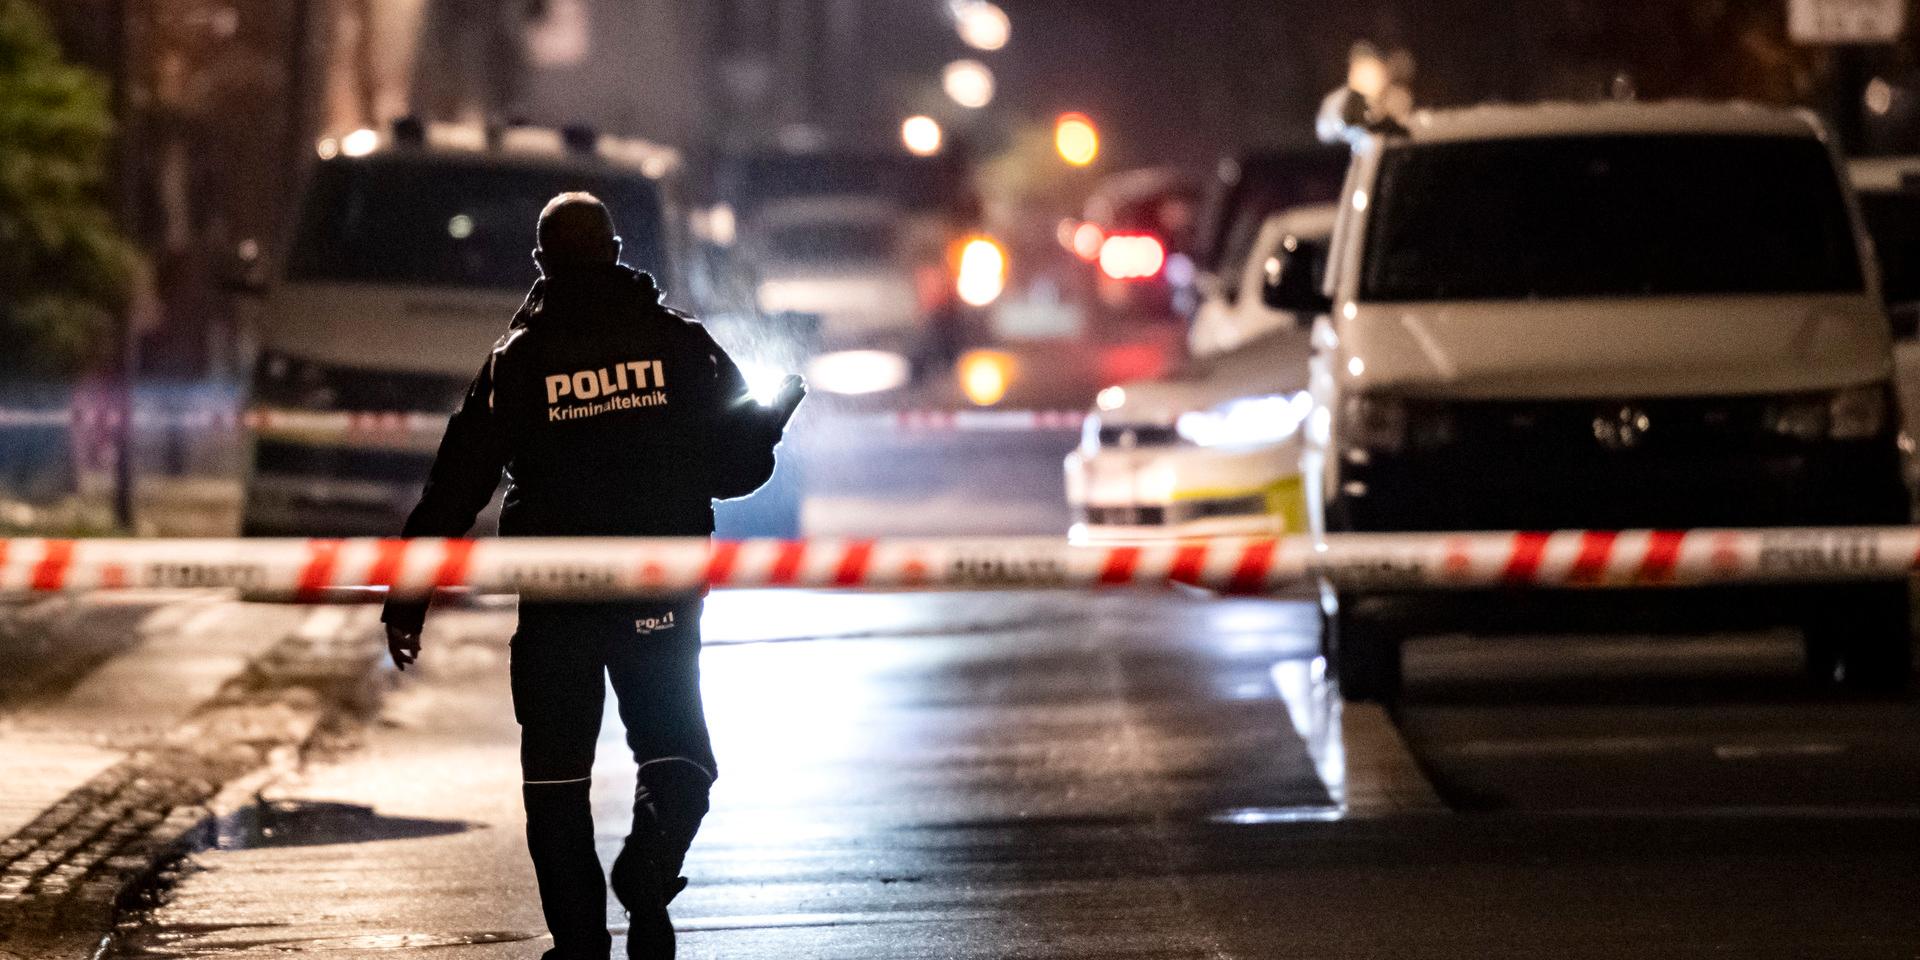 Polisens kriminaltekniker på plats under fredagskvällen efter mordet på en frisörsalong i västra Köpenhamn. Under lördagen inträffade ännu en skjutning i staden.